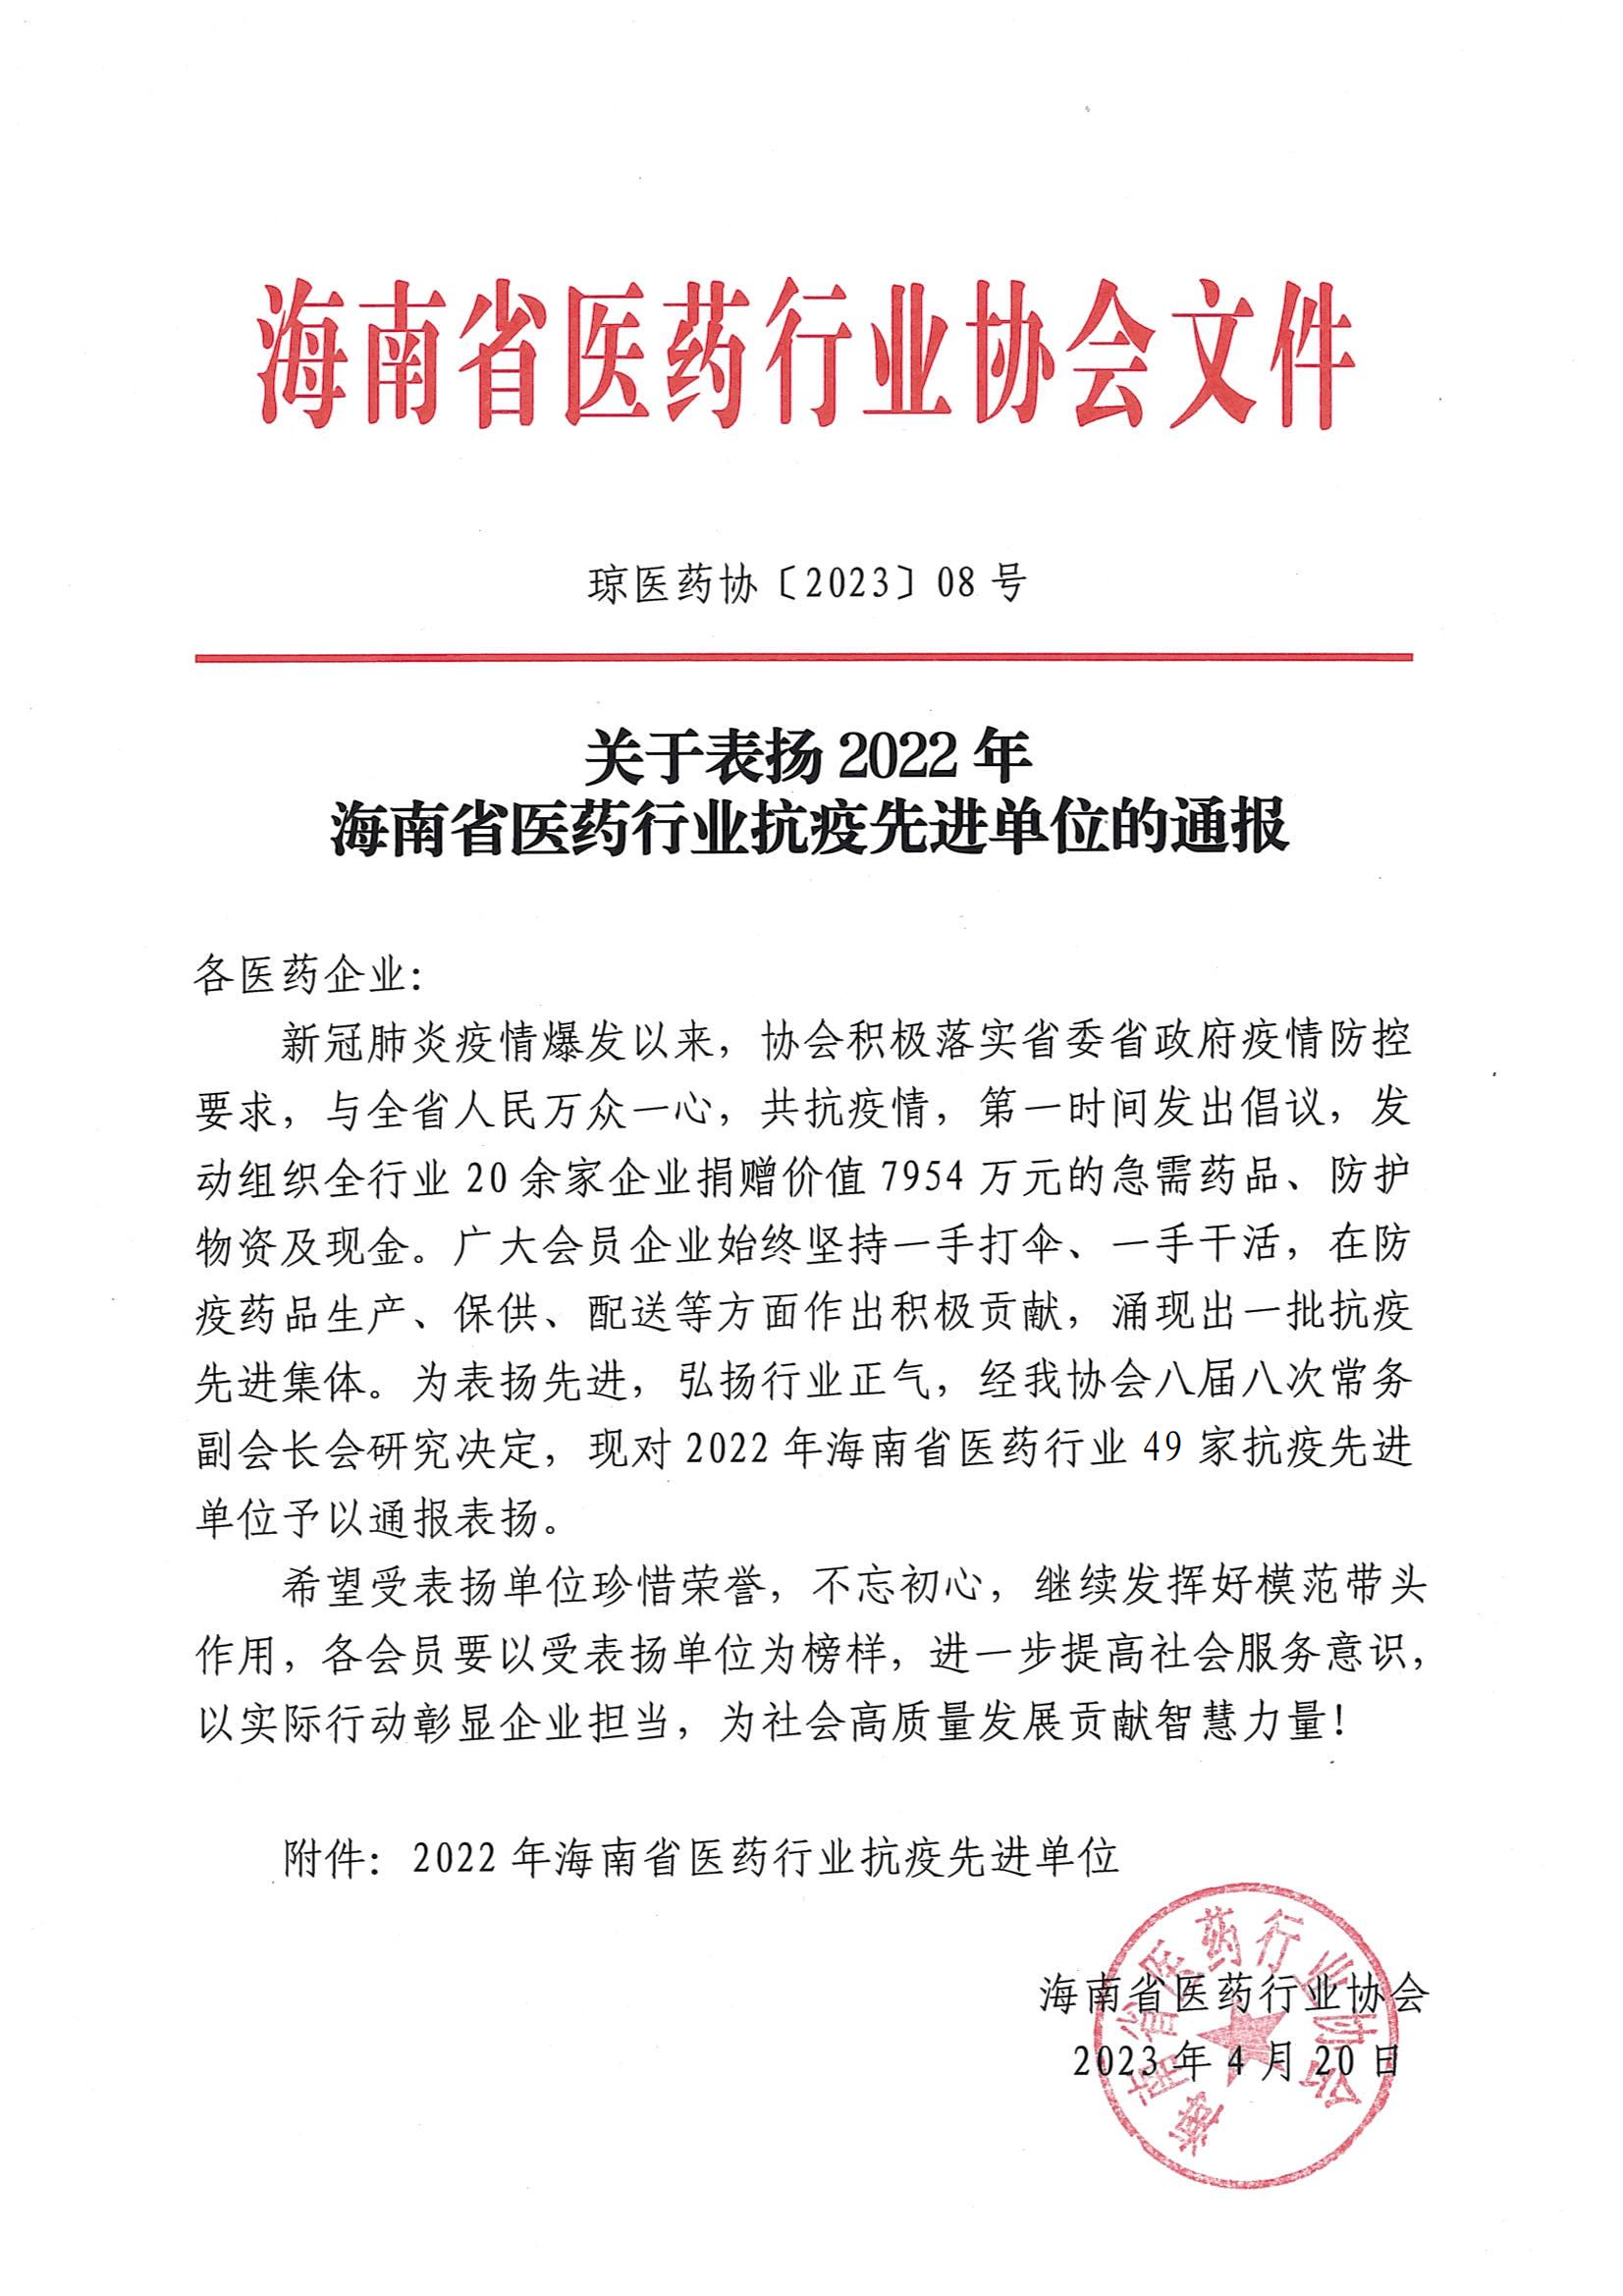 关于表扬2022年海南省医药行业抗疫先进单位的通报_00.png